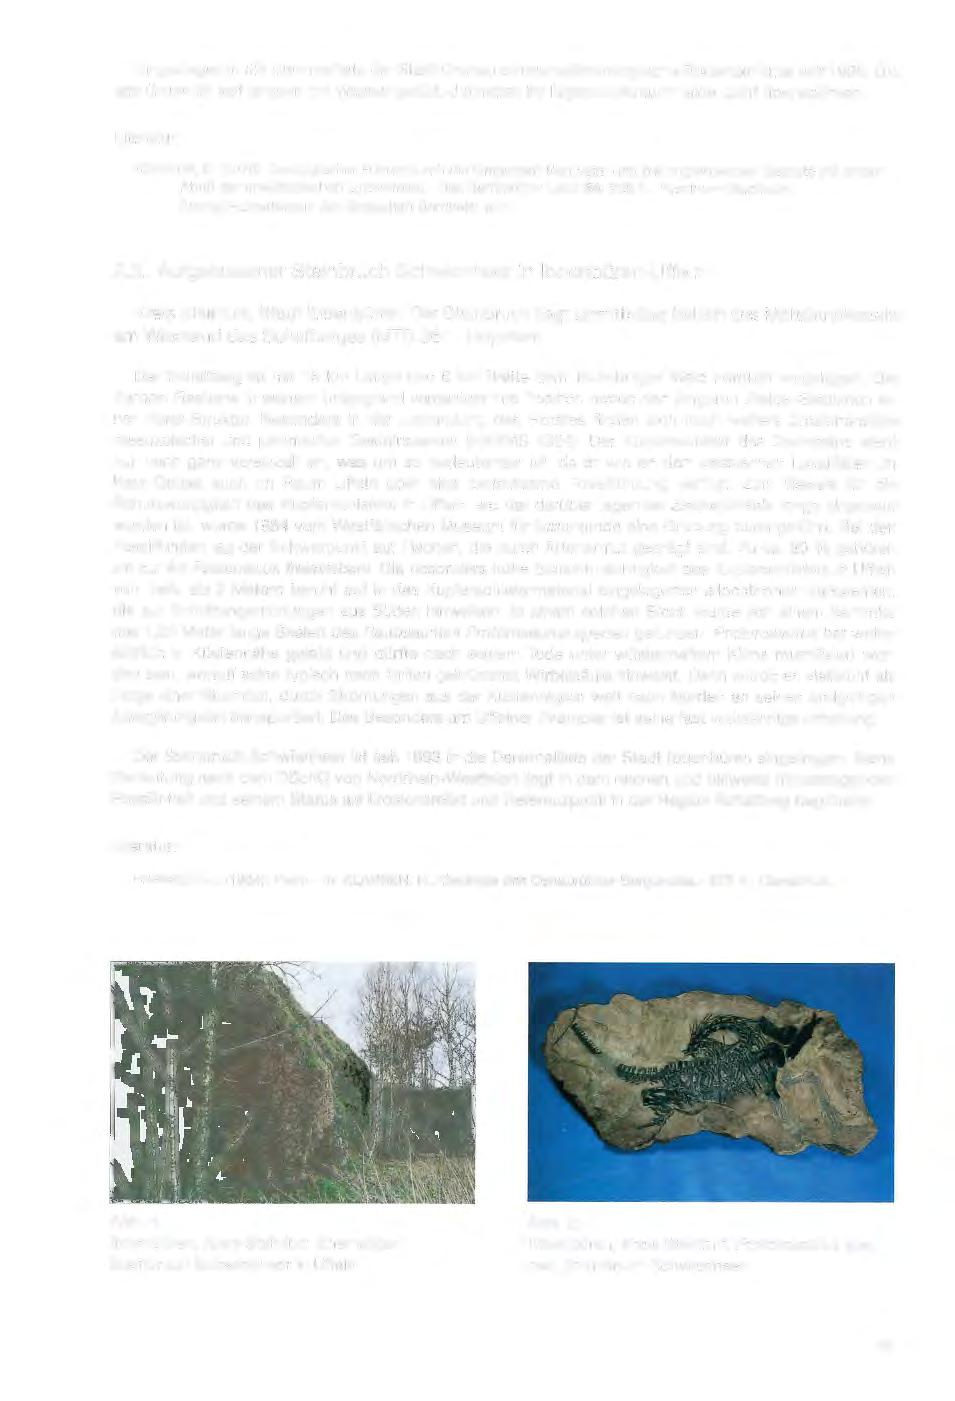 Eingetragen in die Denkmalliste der Stadt Gronau ist das paläontologische Bodendenkmal seit 1990.